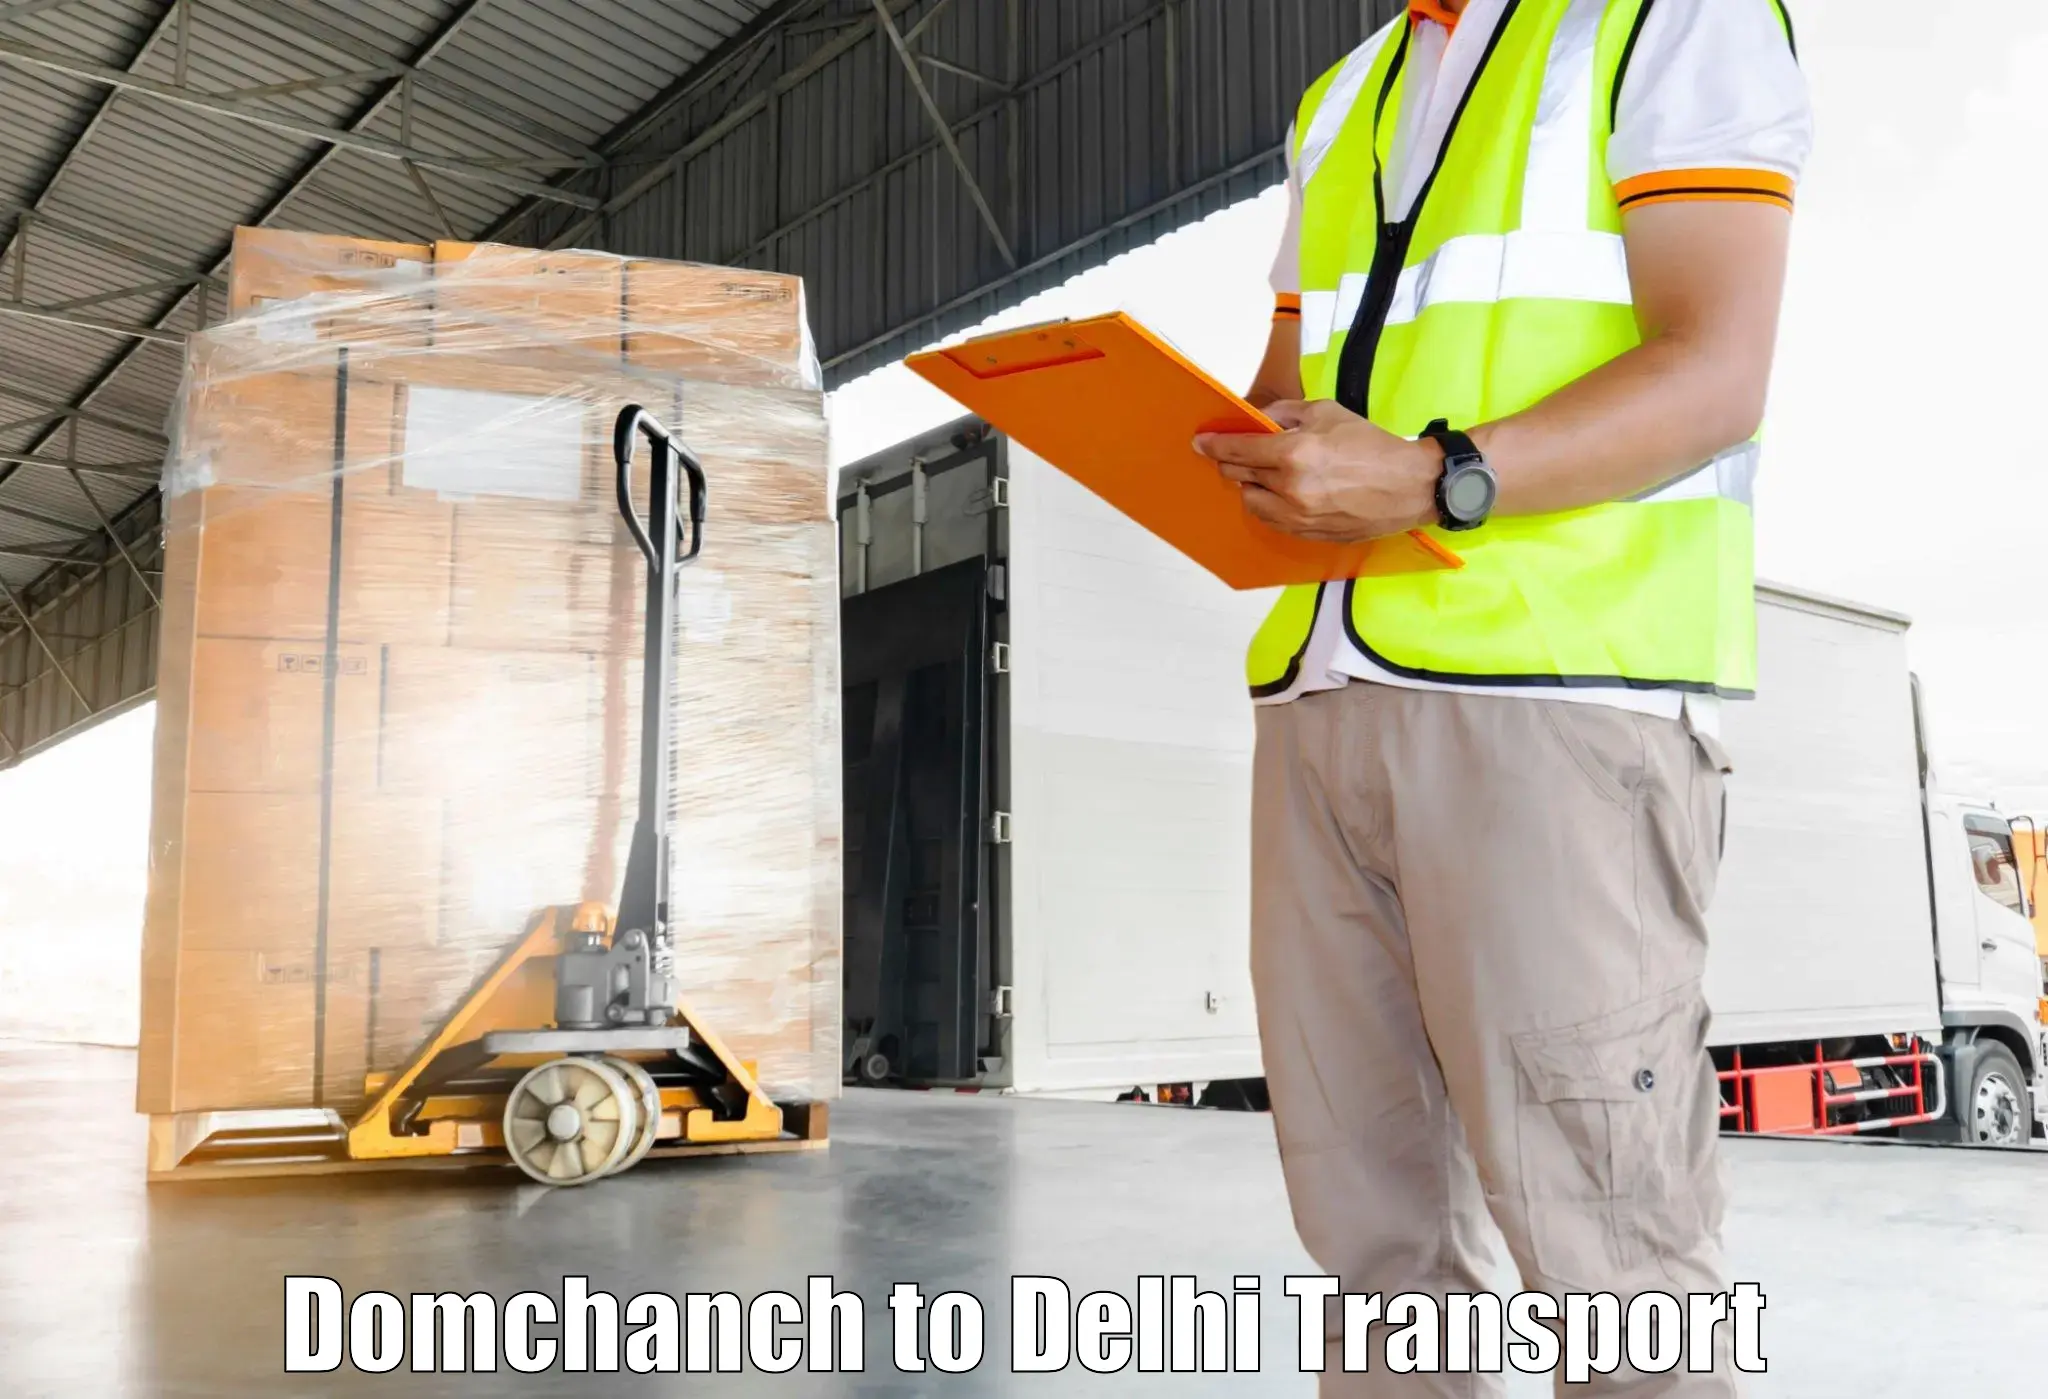 Intercity goods transport Domchanch to IIT Delhi